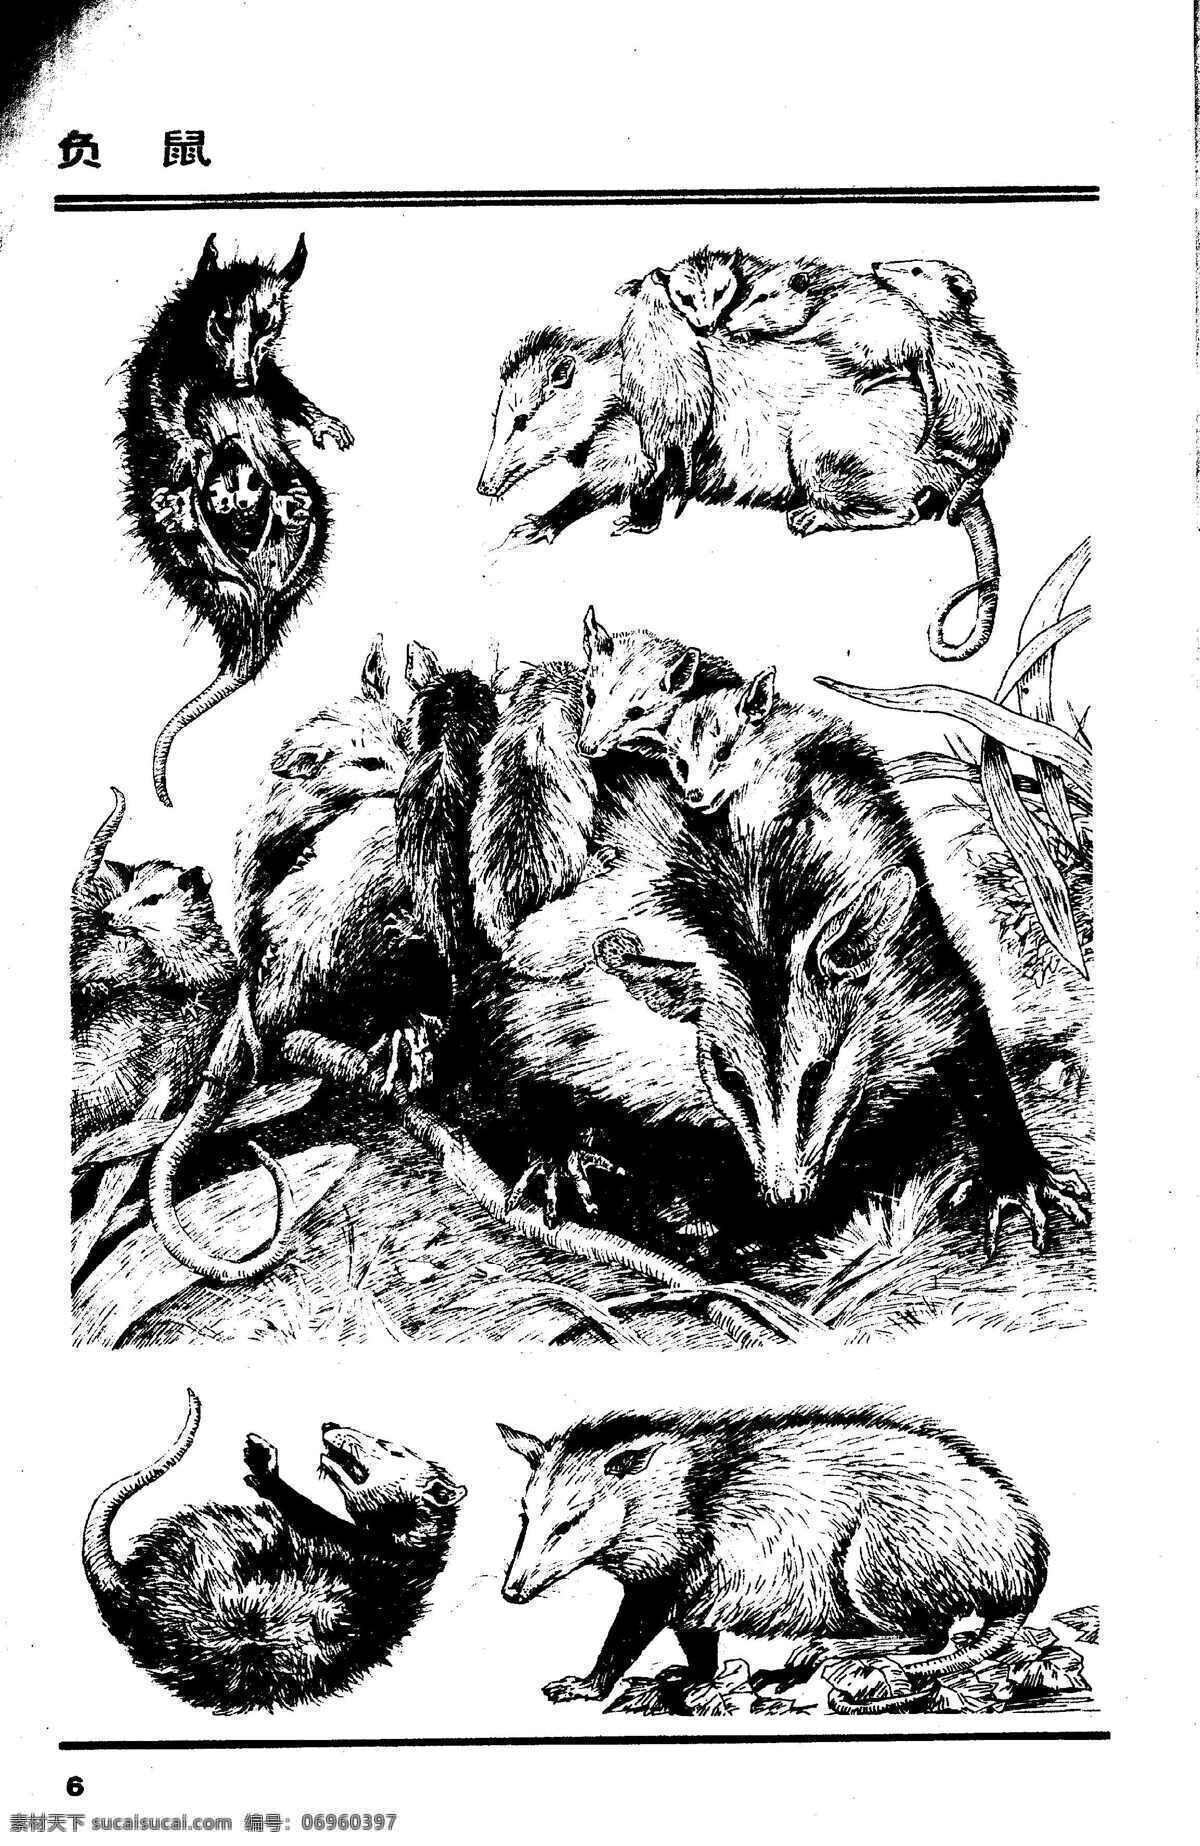 画兽图06 负鼠 百兽 兽 家禽 猛兽 动物 白描 线描 绘画 美术 禽兽 野生动物 画兽谱 画兽图 老鼠 生物世界 设计图库